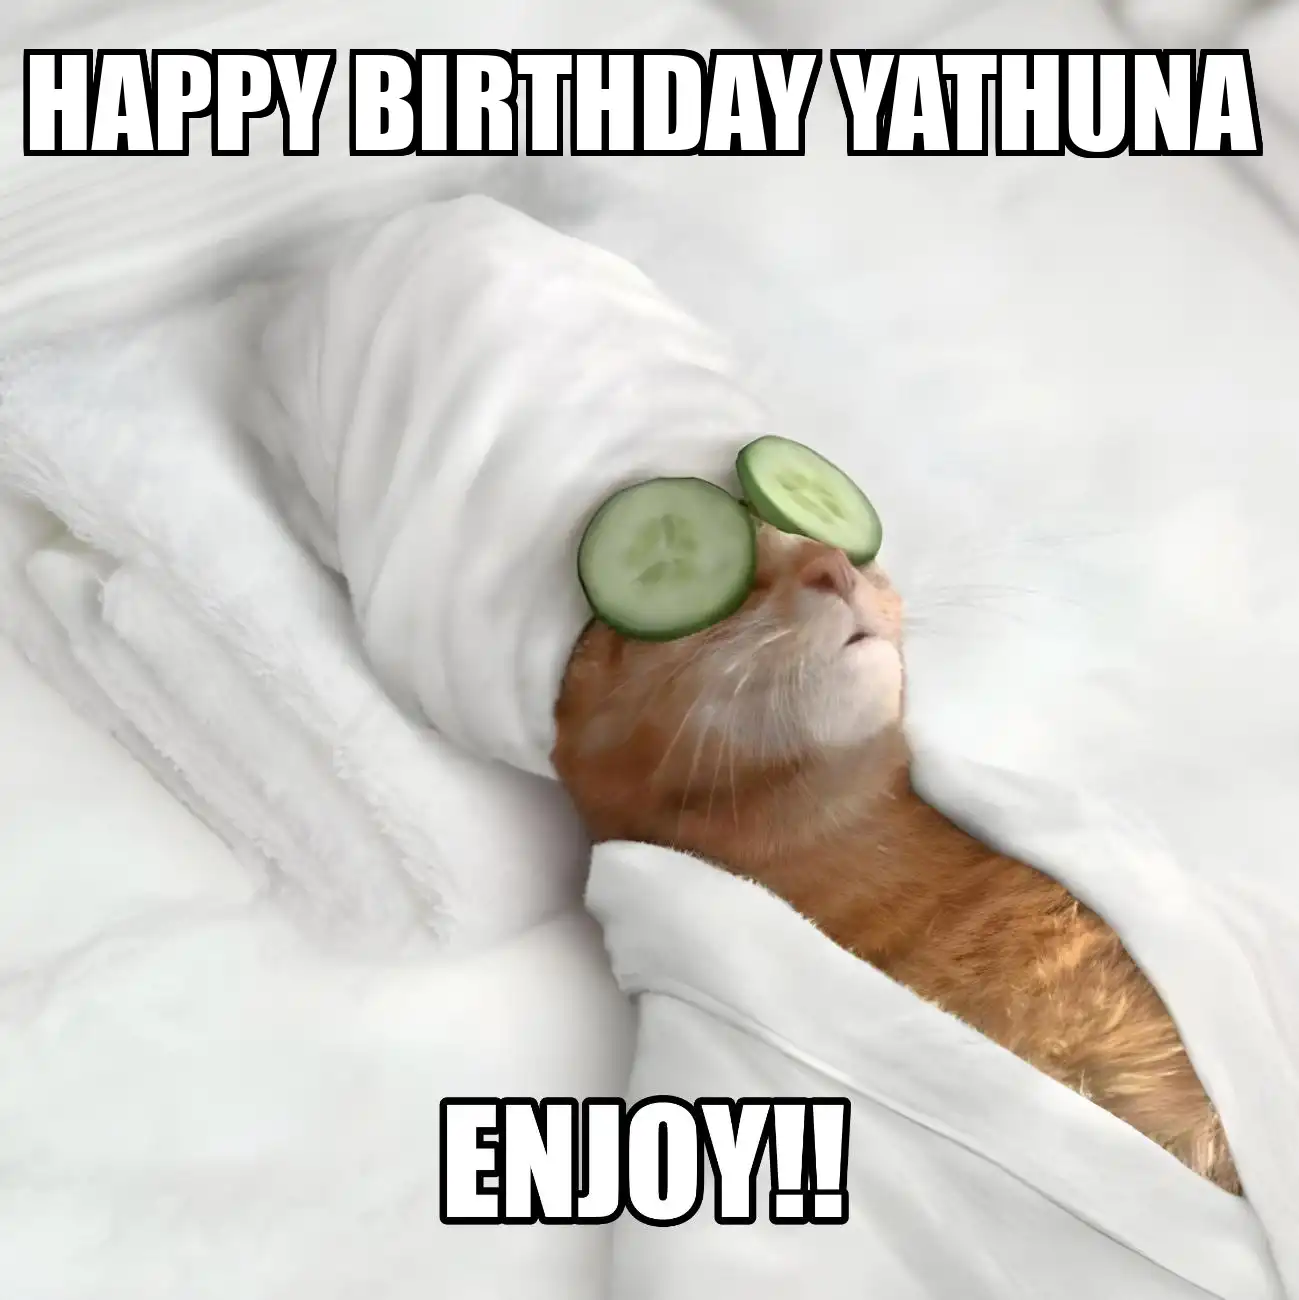 Happy Birthday Yathuna Enjoy Cat Meme